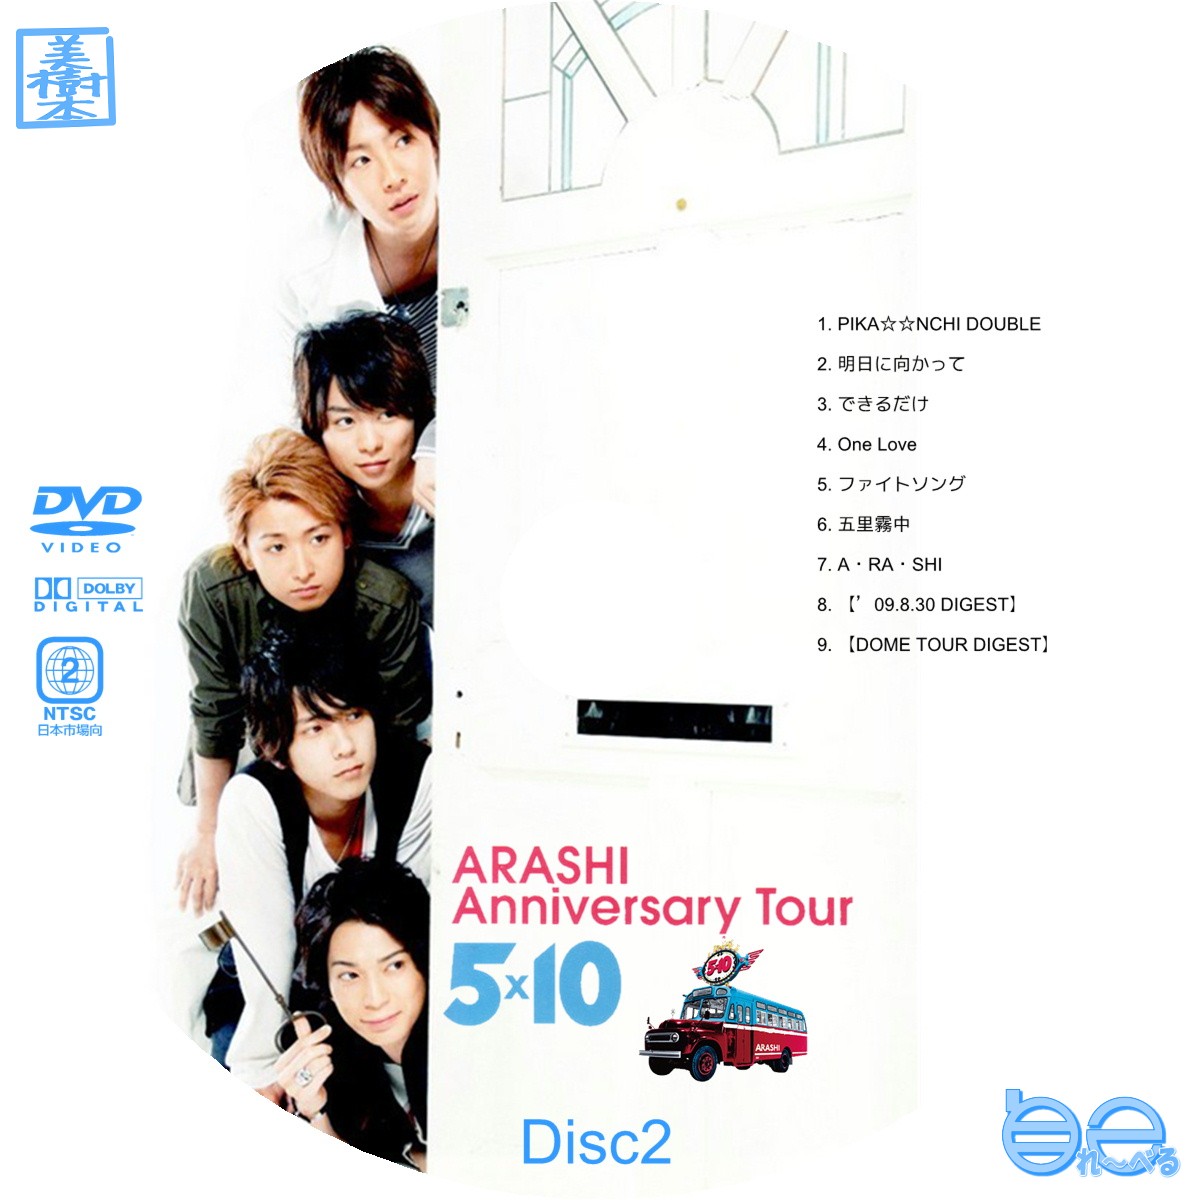 ARASHI Anniversary Tour 5×10 DVD www.krzysztofbialy.com